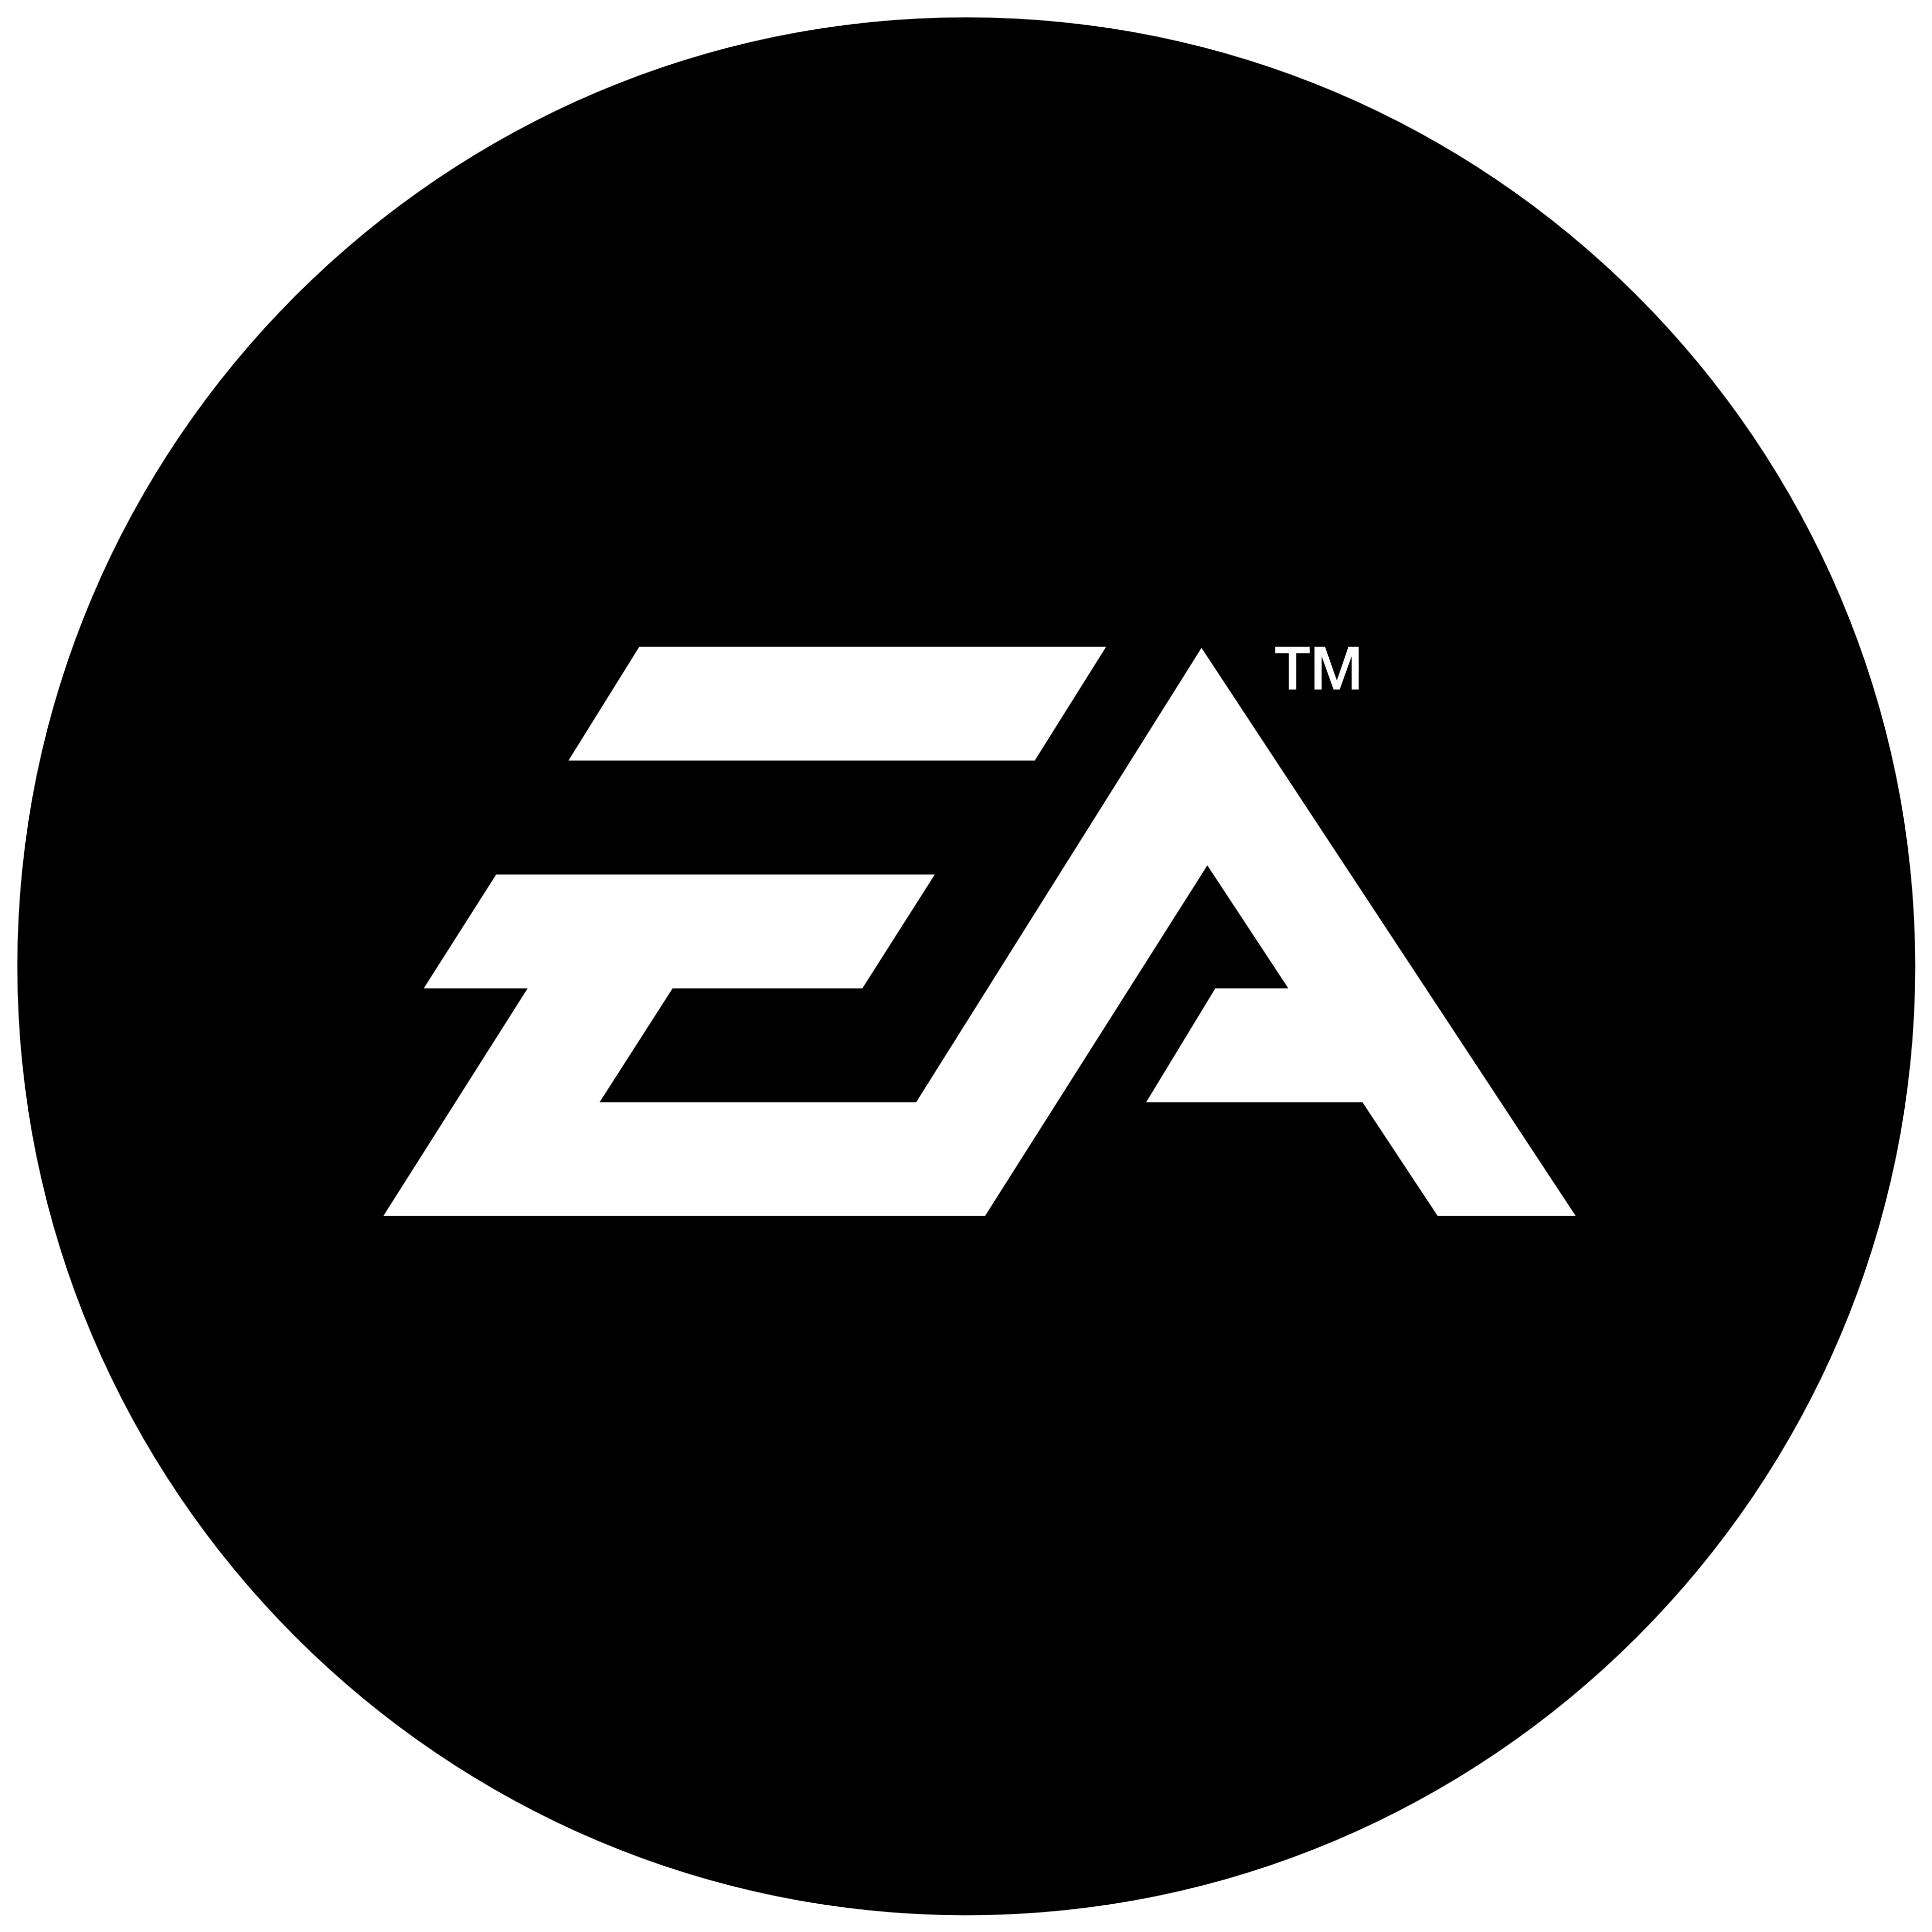 EA Logo - EA (Electronic Arts) – Logos Download